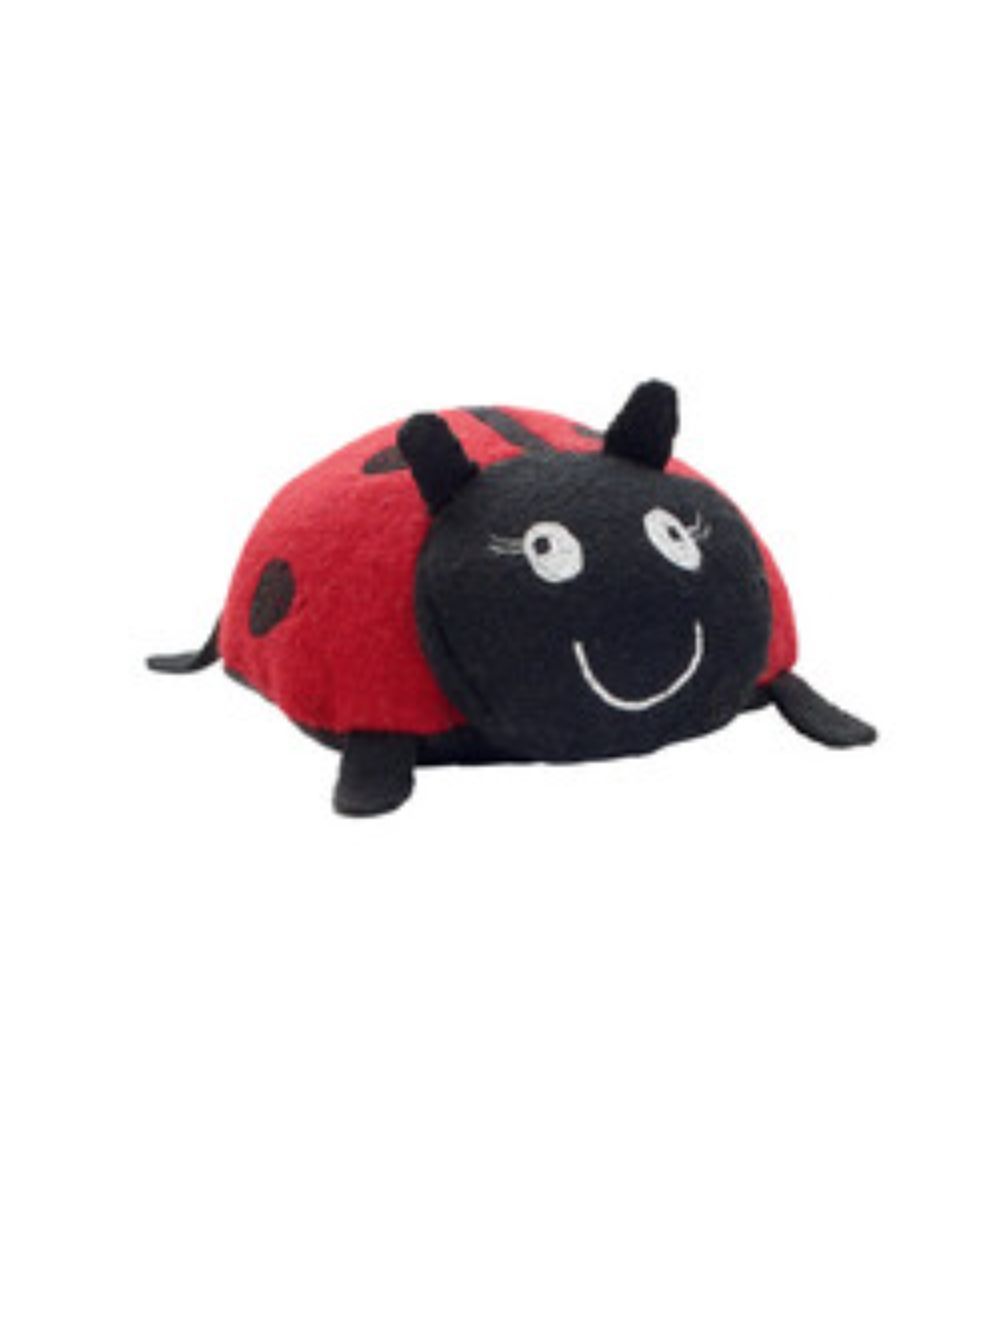 Hunter - Dog toy Florenz, ladybug - (69308) - Kjæledyr og utstyr